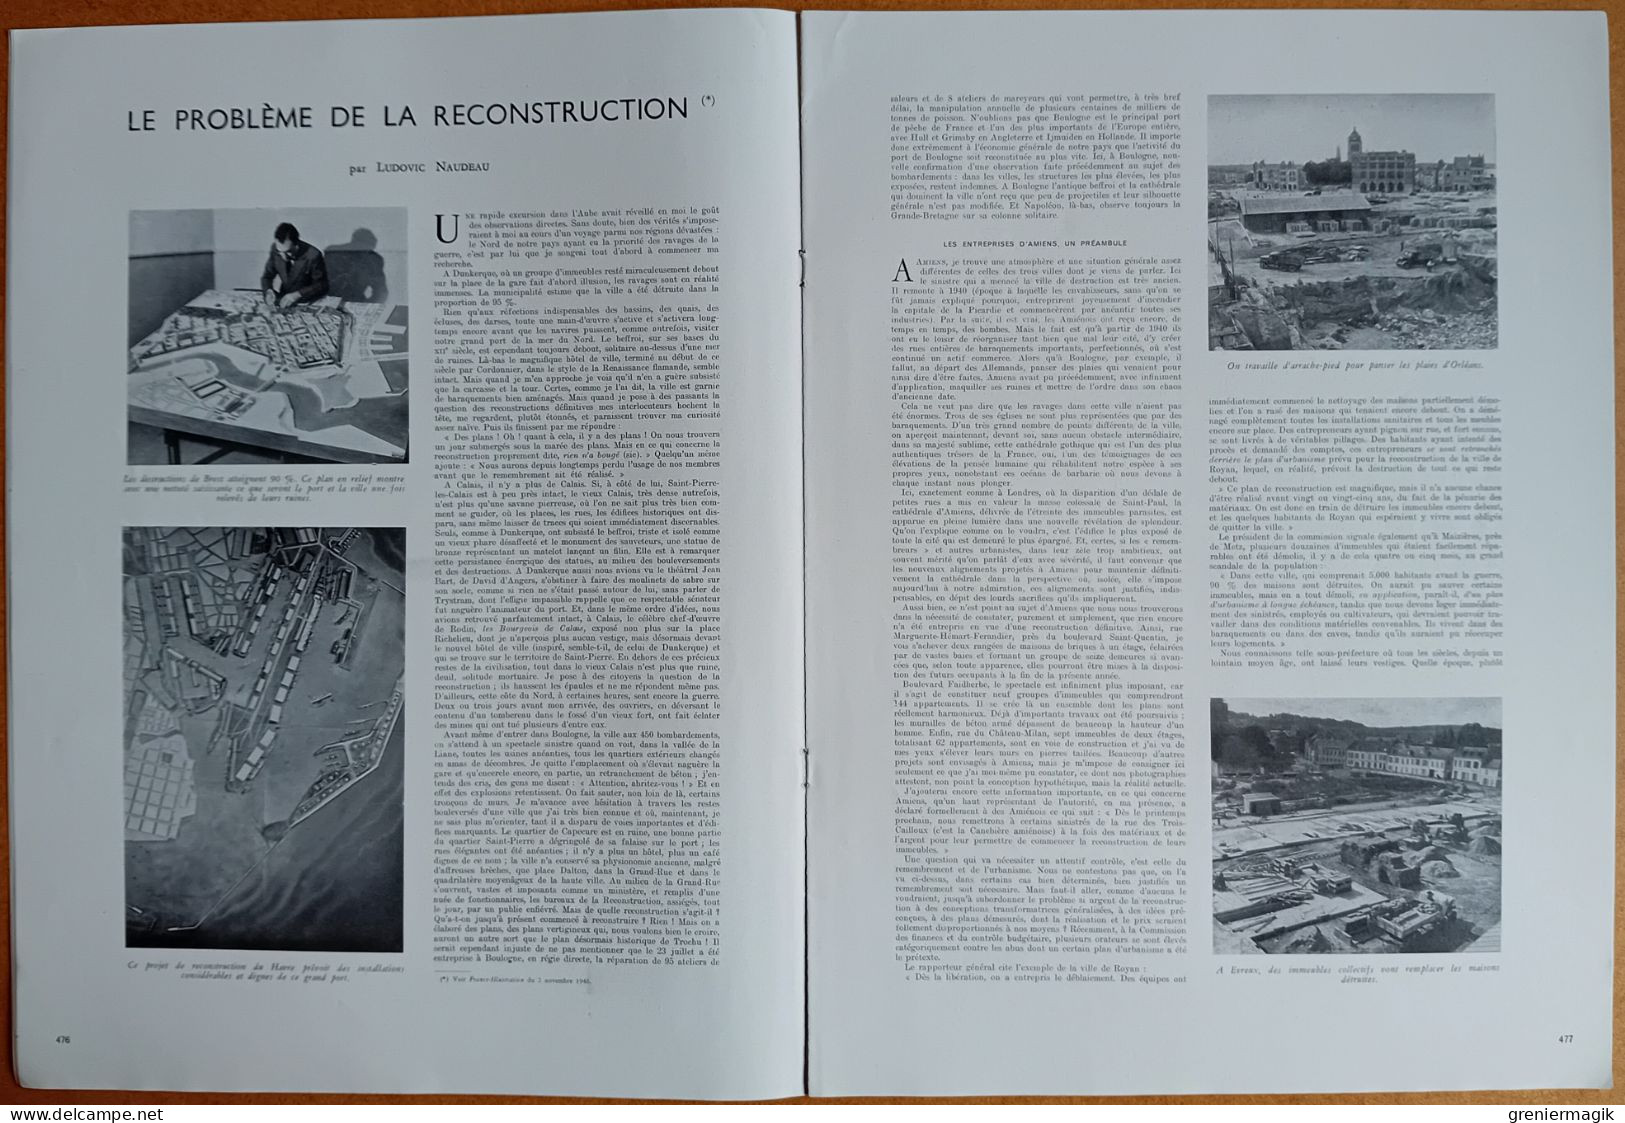 France Illustration N°58 09/11/1946 La Campagne électorale à Paris/Tunisie/Assemblée Générale De L'ONU/De Soubiran - Informaciones Generales